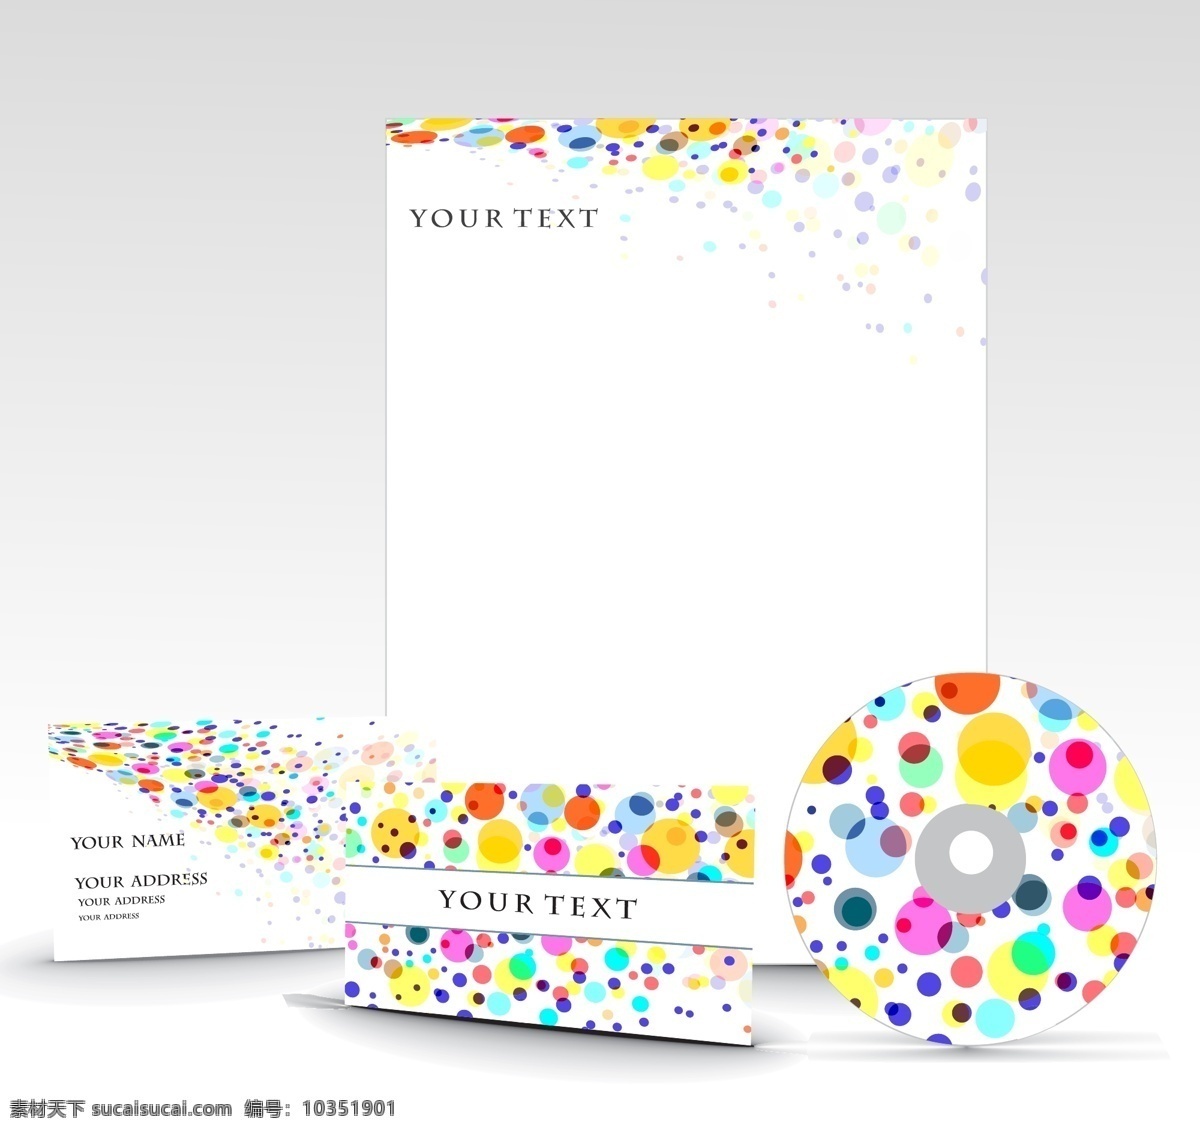 彩 点 vi 模板 vi模板 vi设计 名片 名片设计 卡片 卡片设计 时尚名片 eps格式 潮流卡片 时尚卡片 信封 信纸 白色